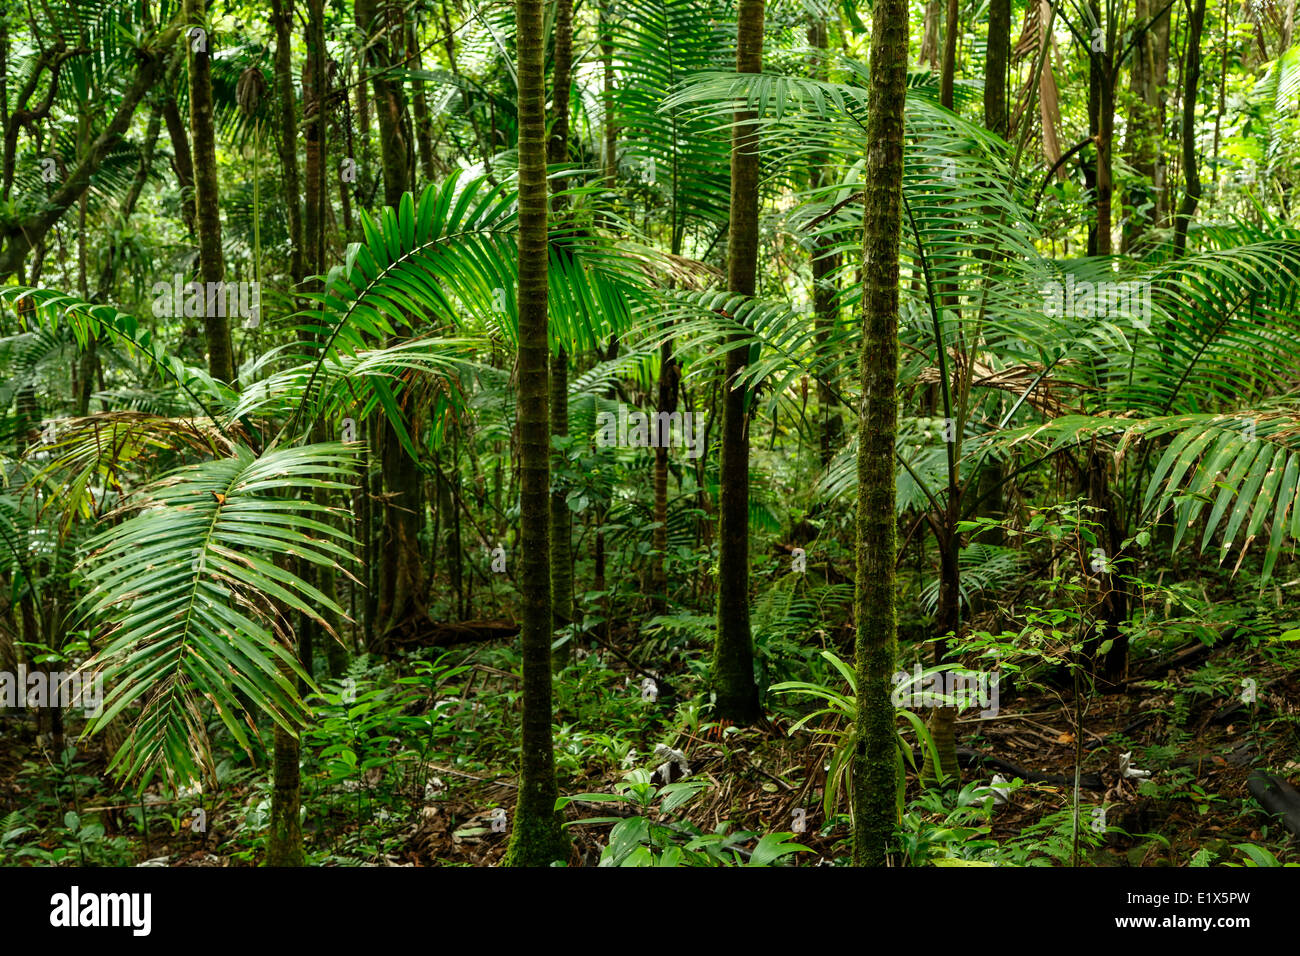 La escena del bosque, el Bosque Nacional del Caribe (El Yunque rain forest), Puerto Rico Foto de stock